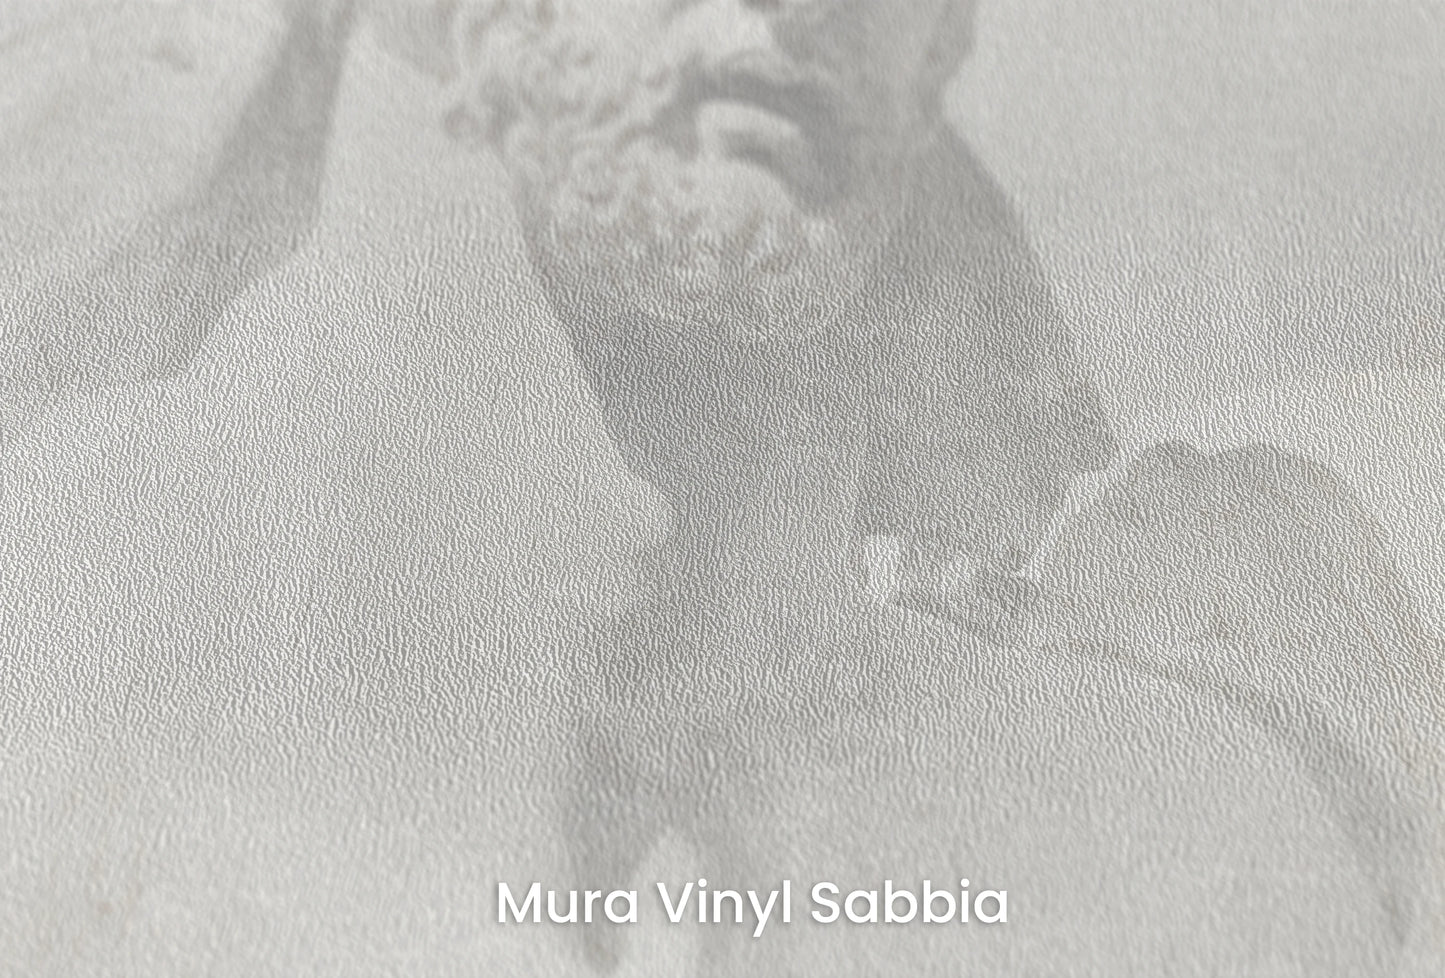 Zbliżenie na artystyczną fototapetę o nazwie Apollo's Gaze na podłożu Mura Vinyl Sabbia struktura grubego ziarna piasku.